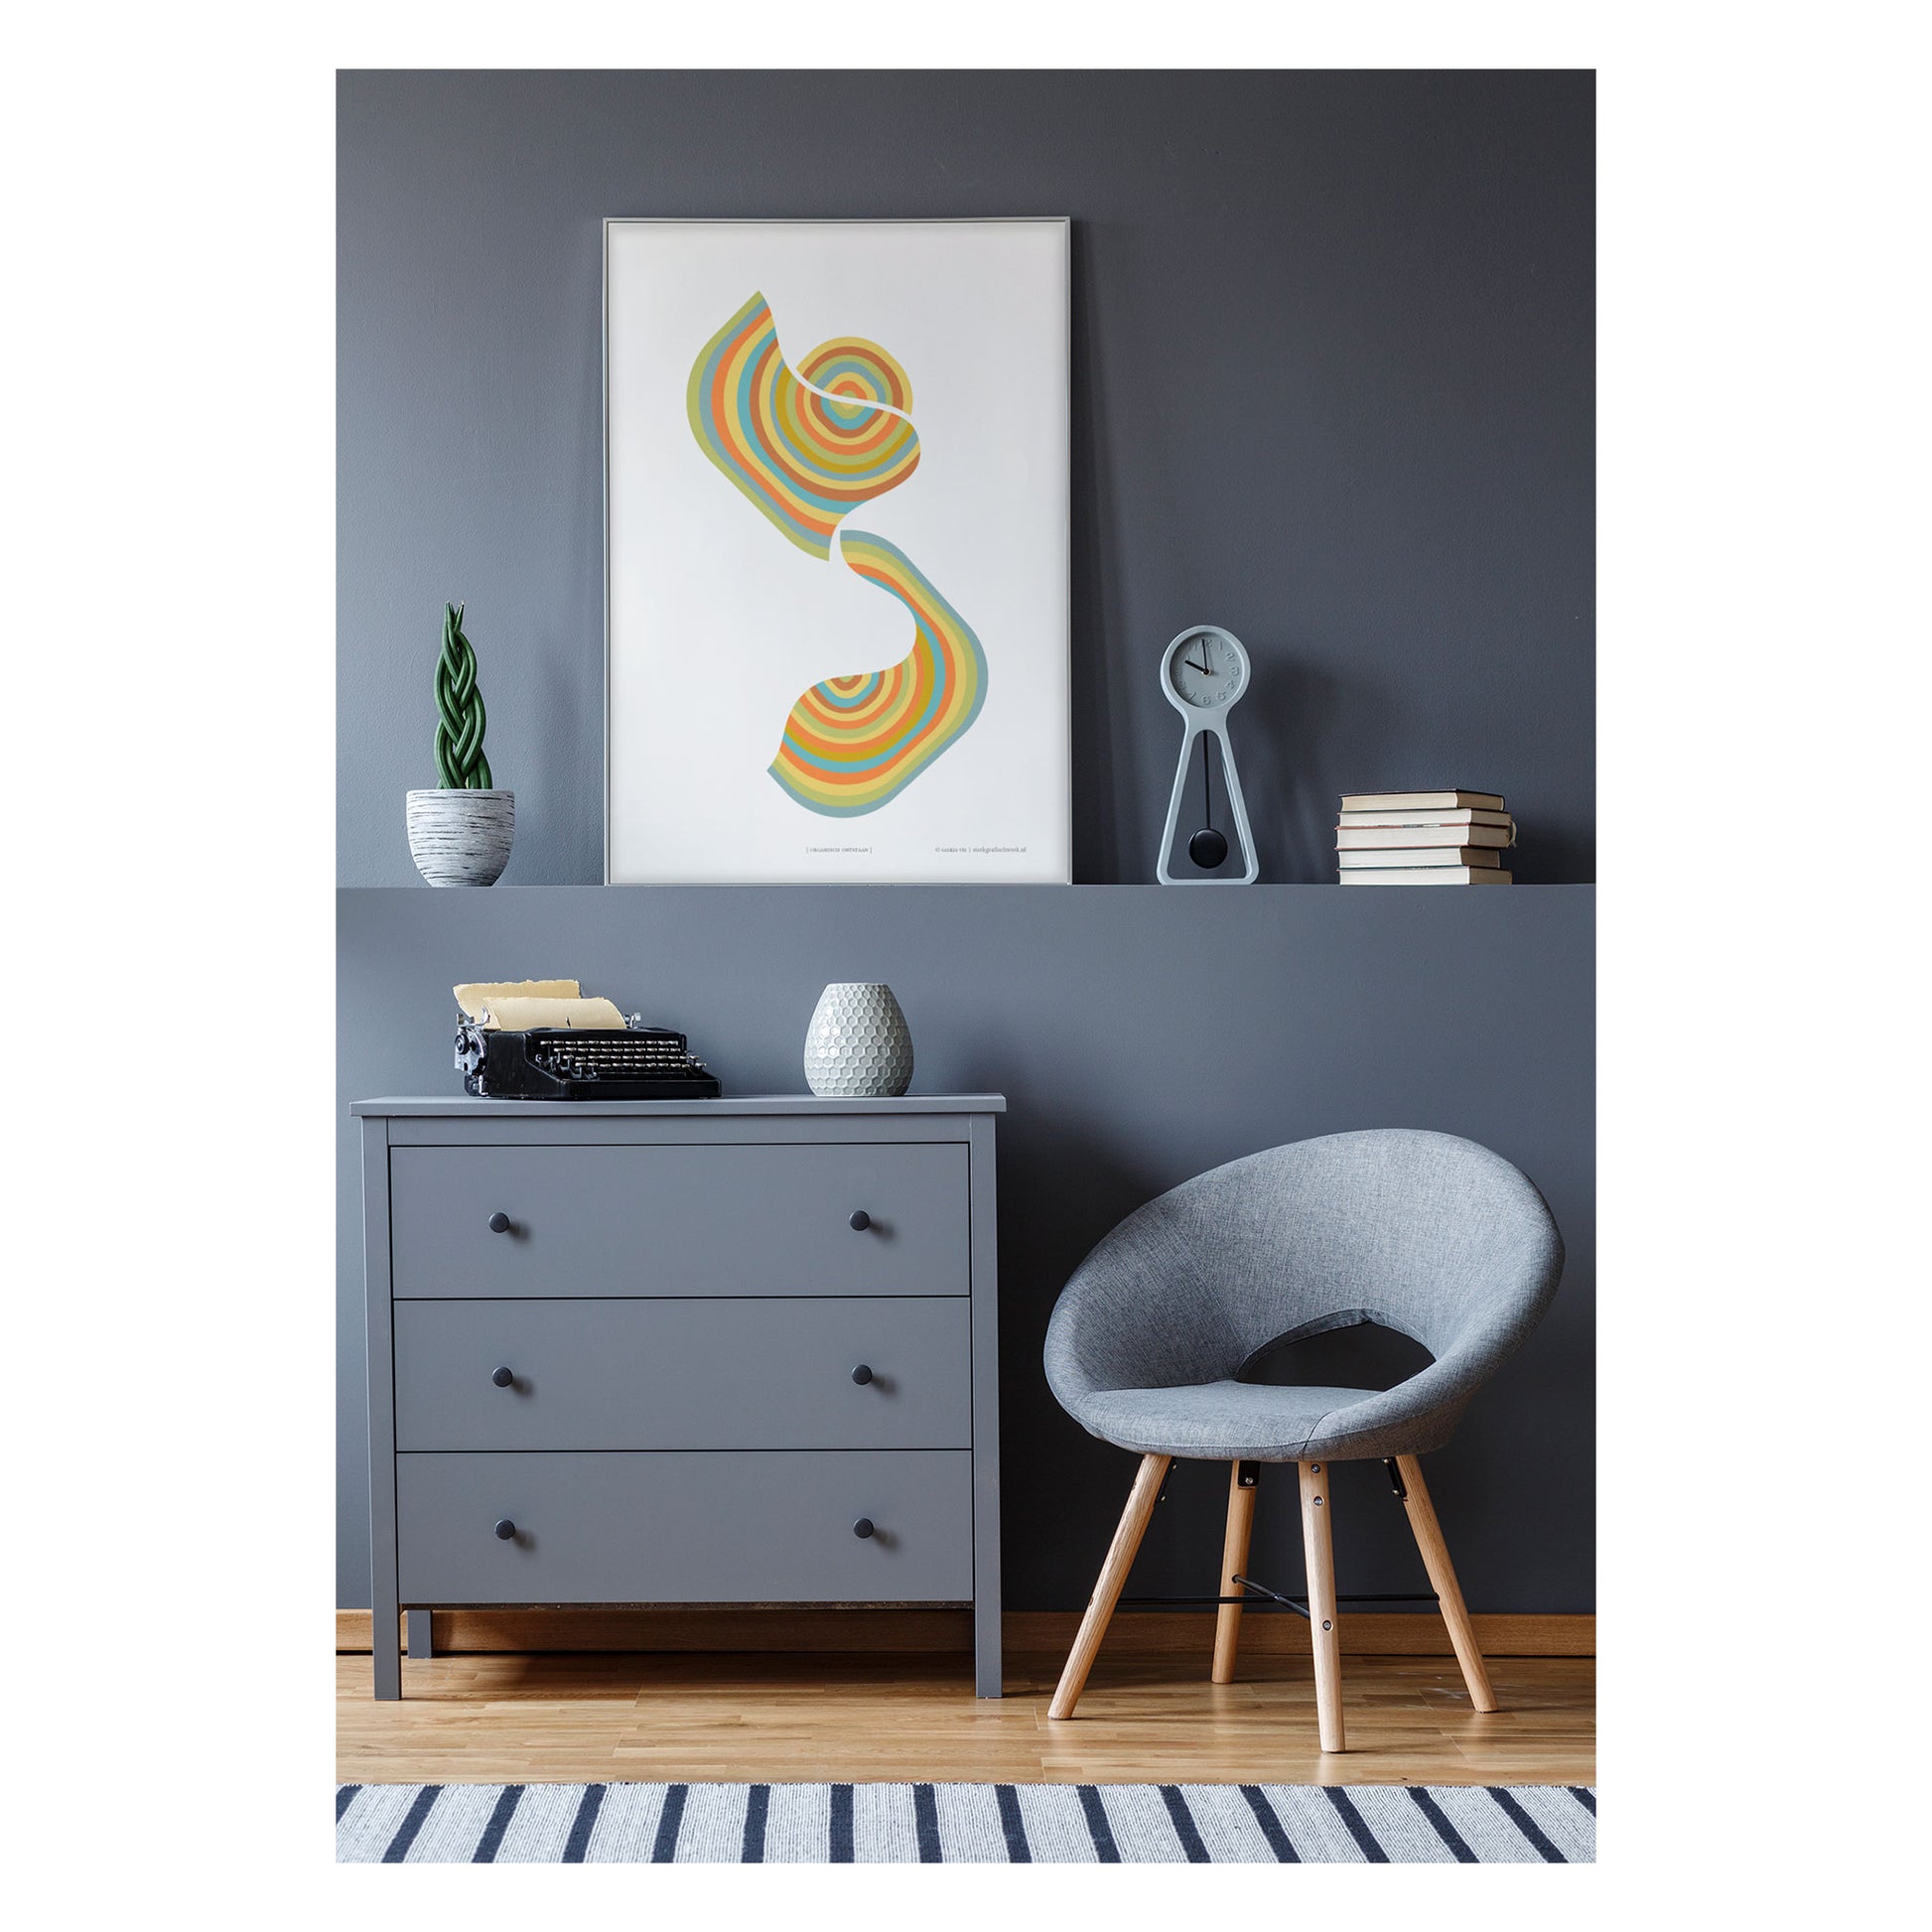 Productafbeelding, poster "organisch ontstaan", foto impressie 2, hangend aan een wand in grijskleurig interieur